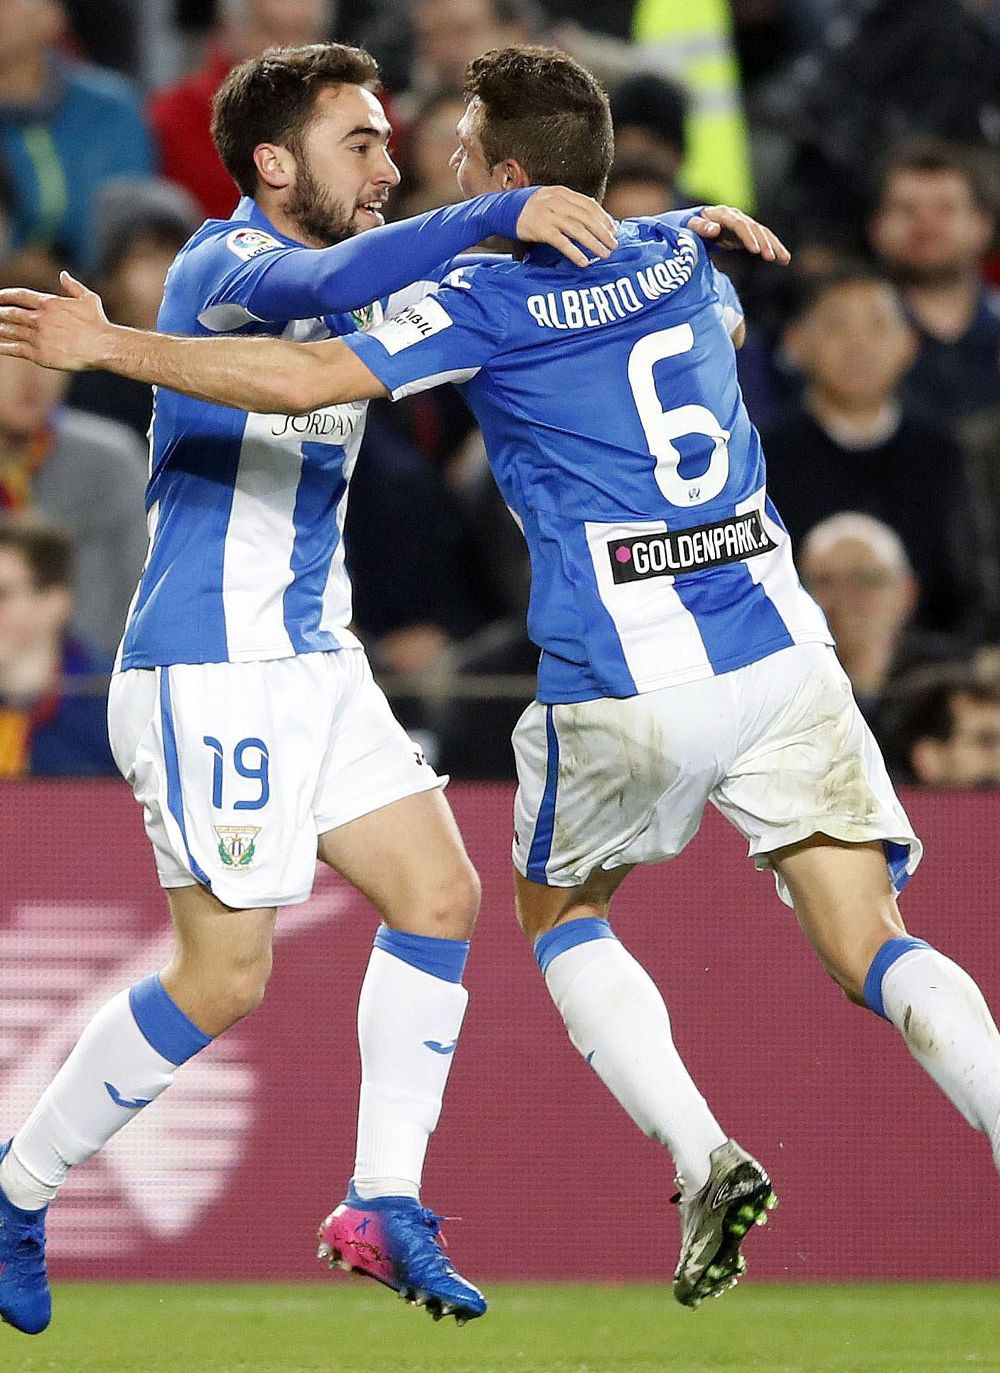 Unai López y Alberto celebran el gol del Leganés.